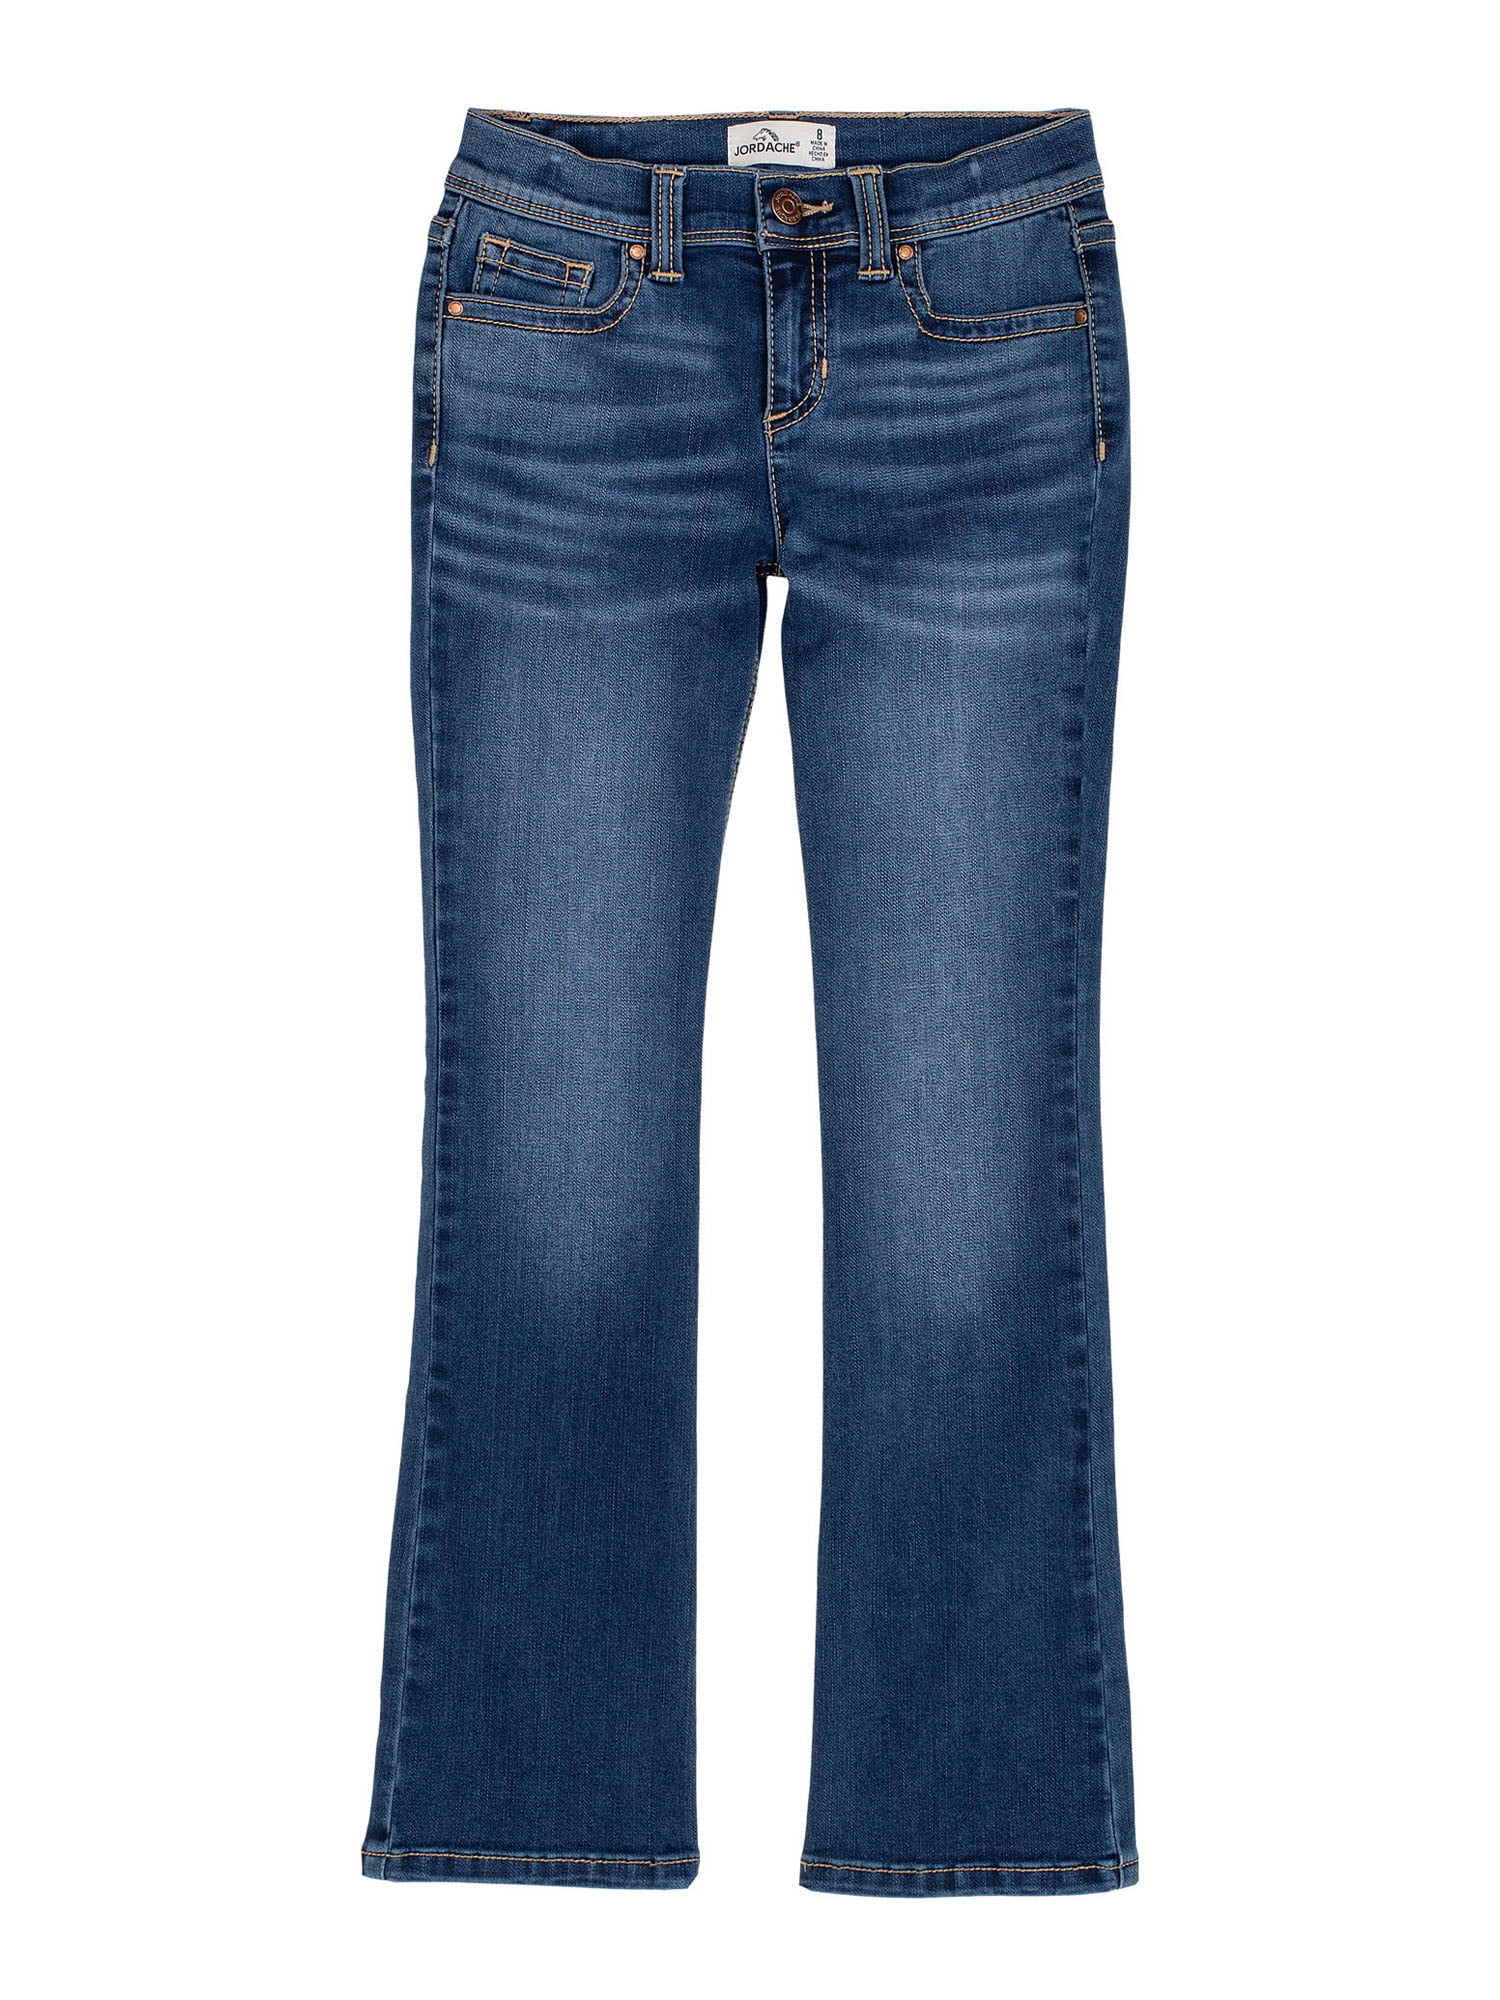 Jordache - Jordache Girls Bootcut Jeans, Sizes 5-18 & Plus - Walmart ...